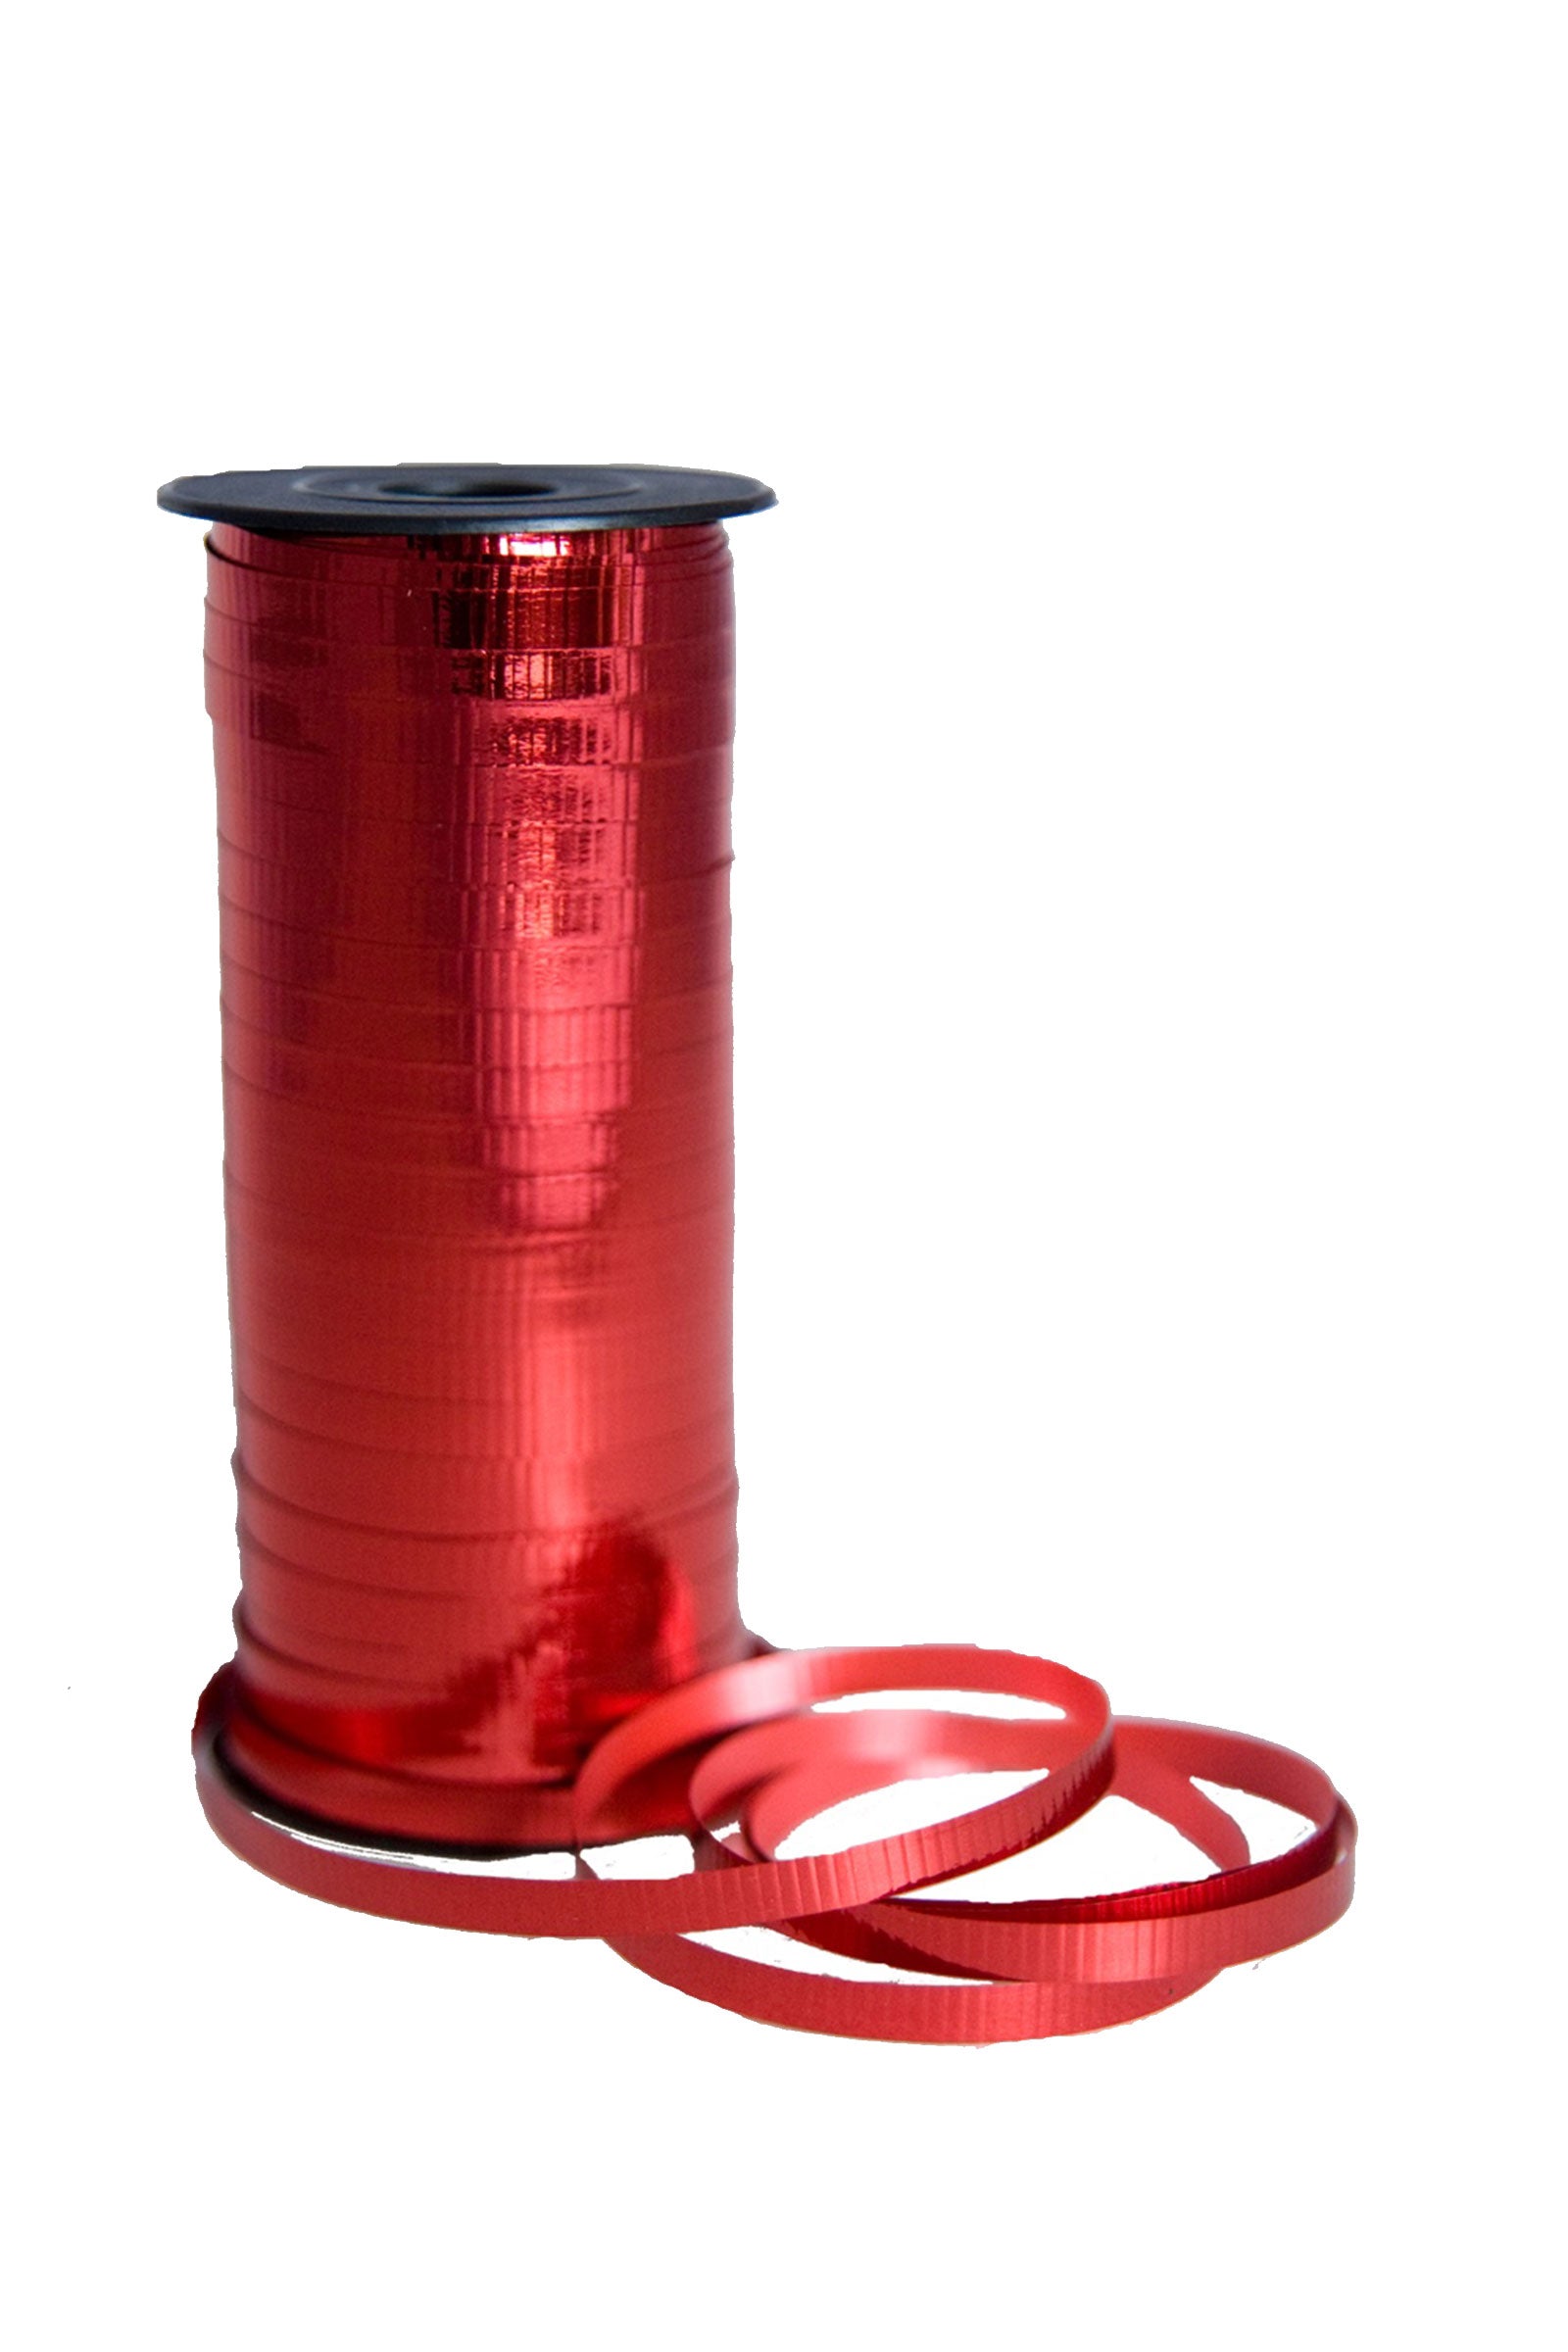 Curling Ribbon - 100yds - Metallic Red